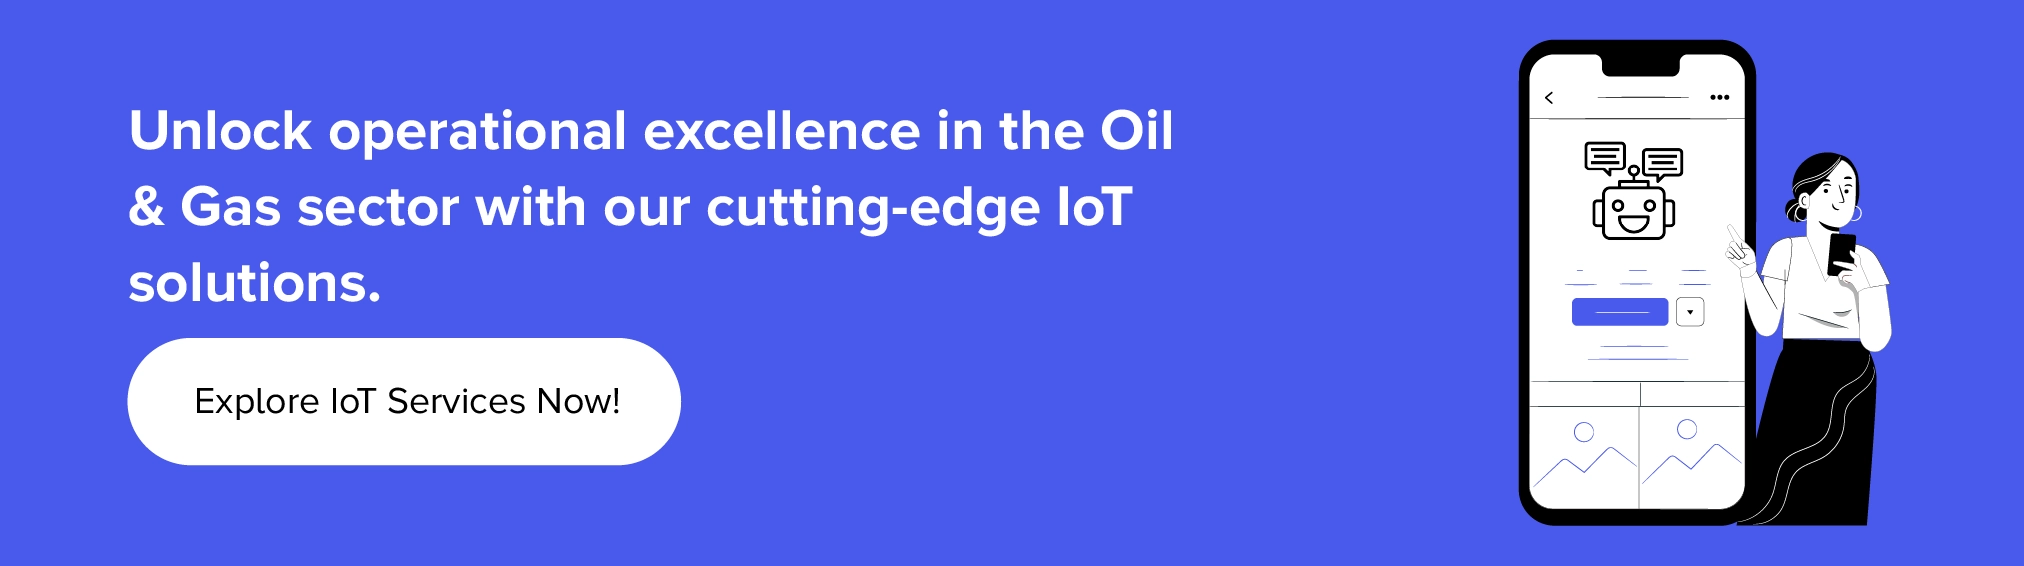 Colabore para uma integração perfeita da IoT nas suas operações de petróleo e gás